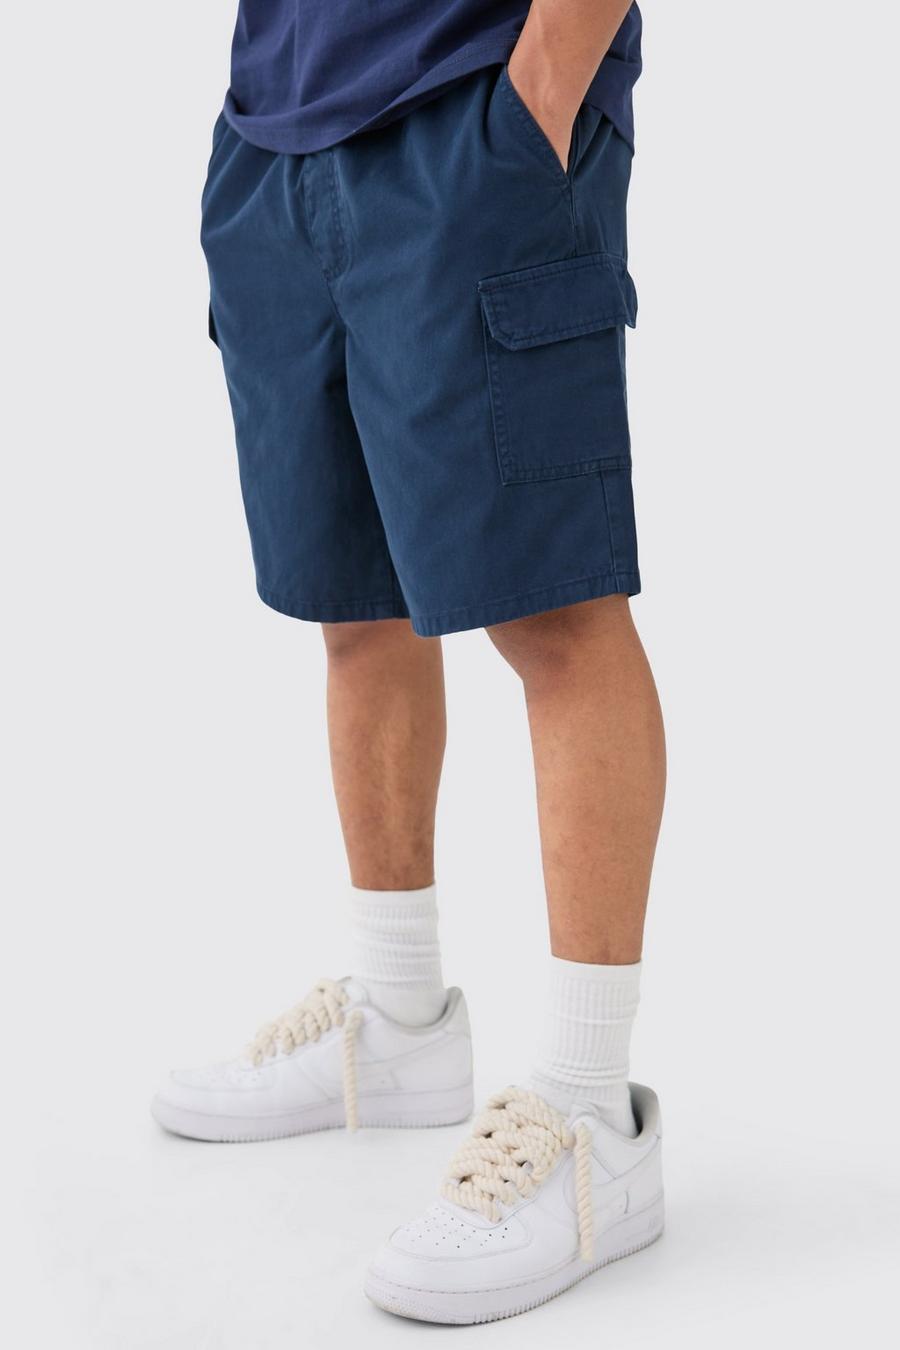 Pantalón corto cargo holgado, Navy